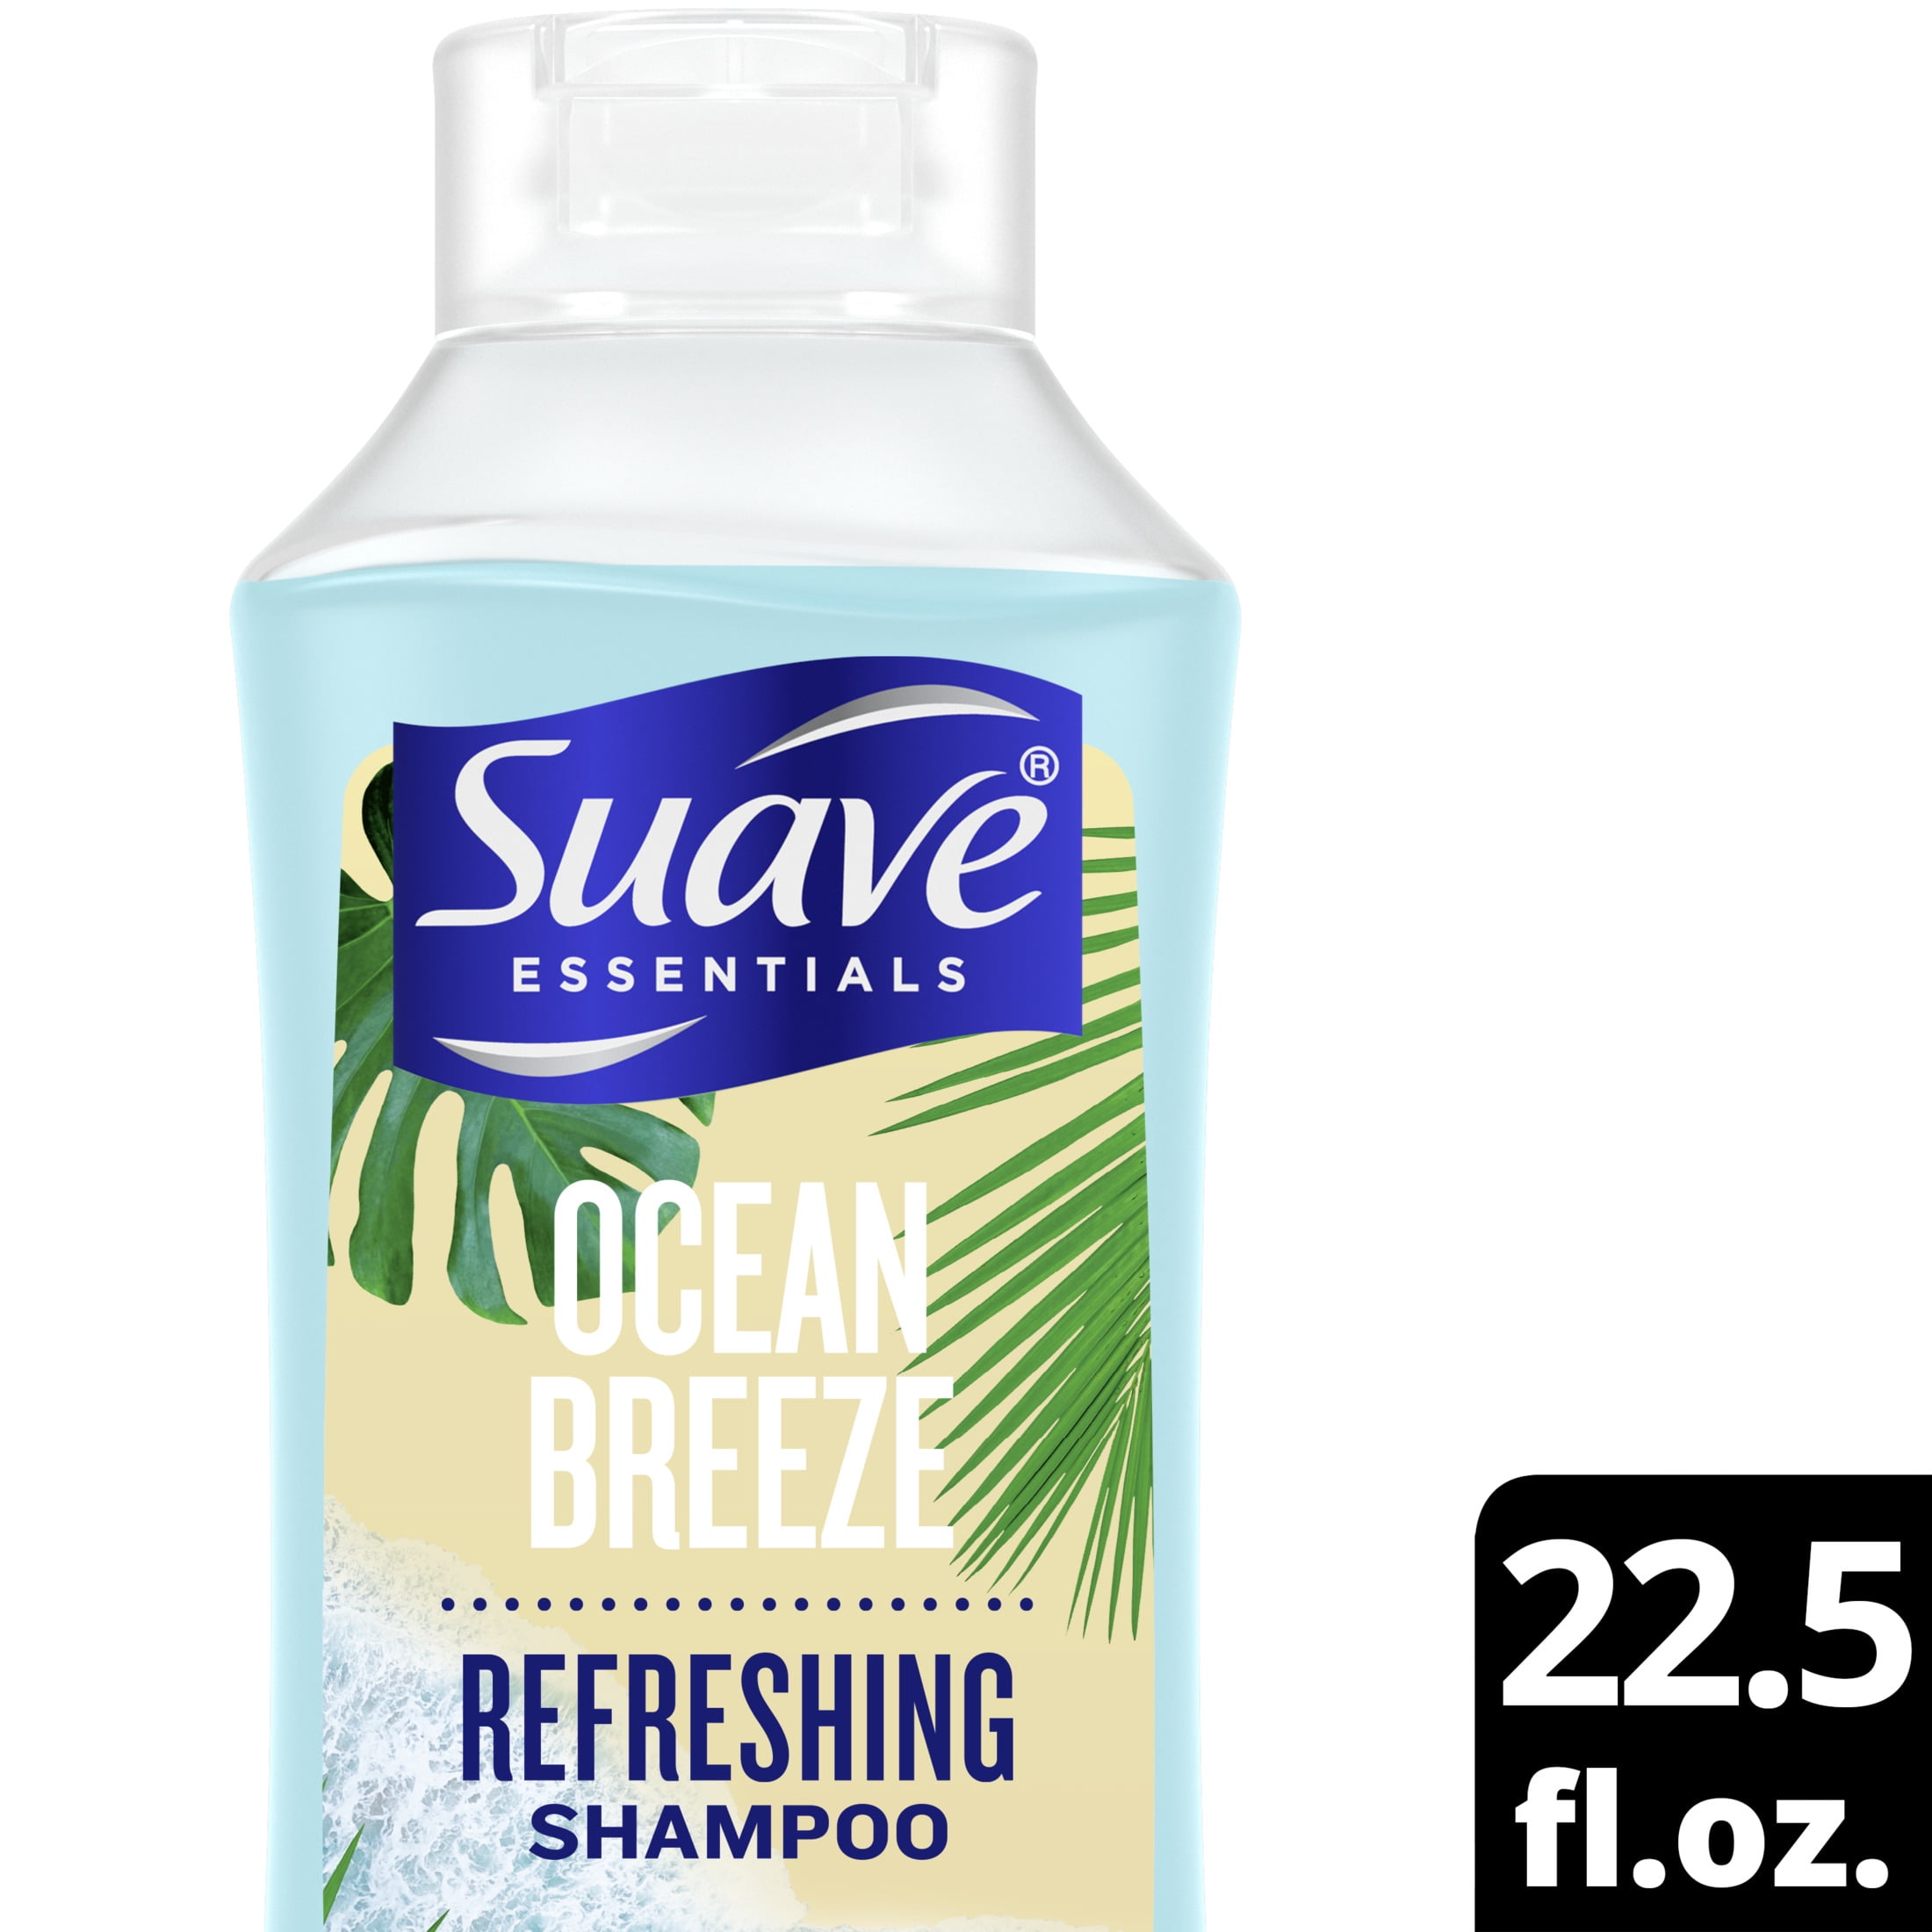 Suave Essentials Ocean Breeze Refreshing Shampoo Oz, 53%